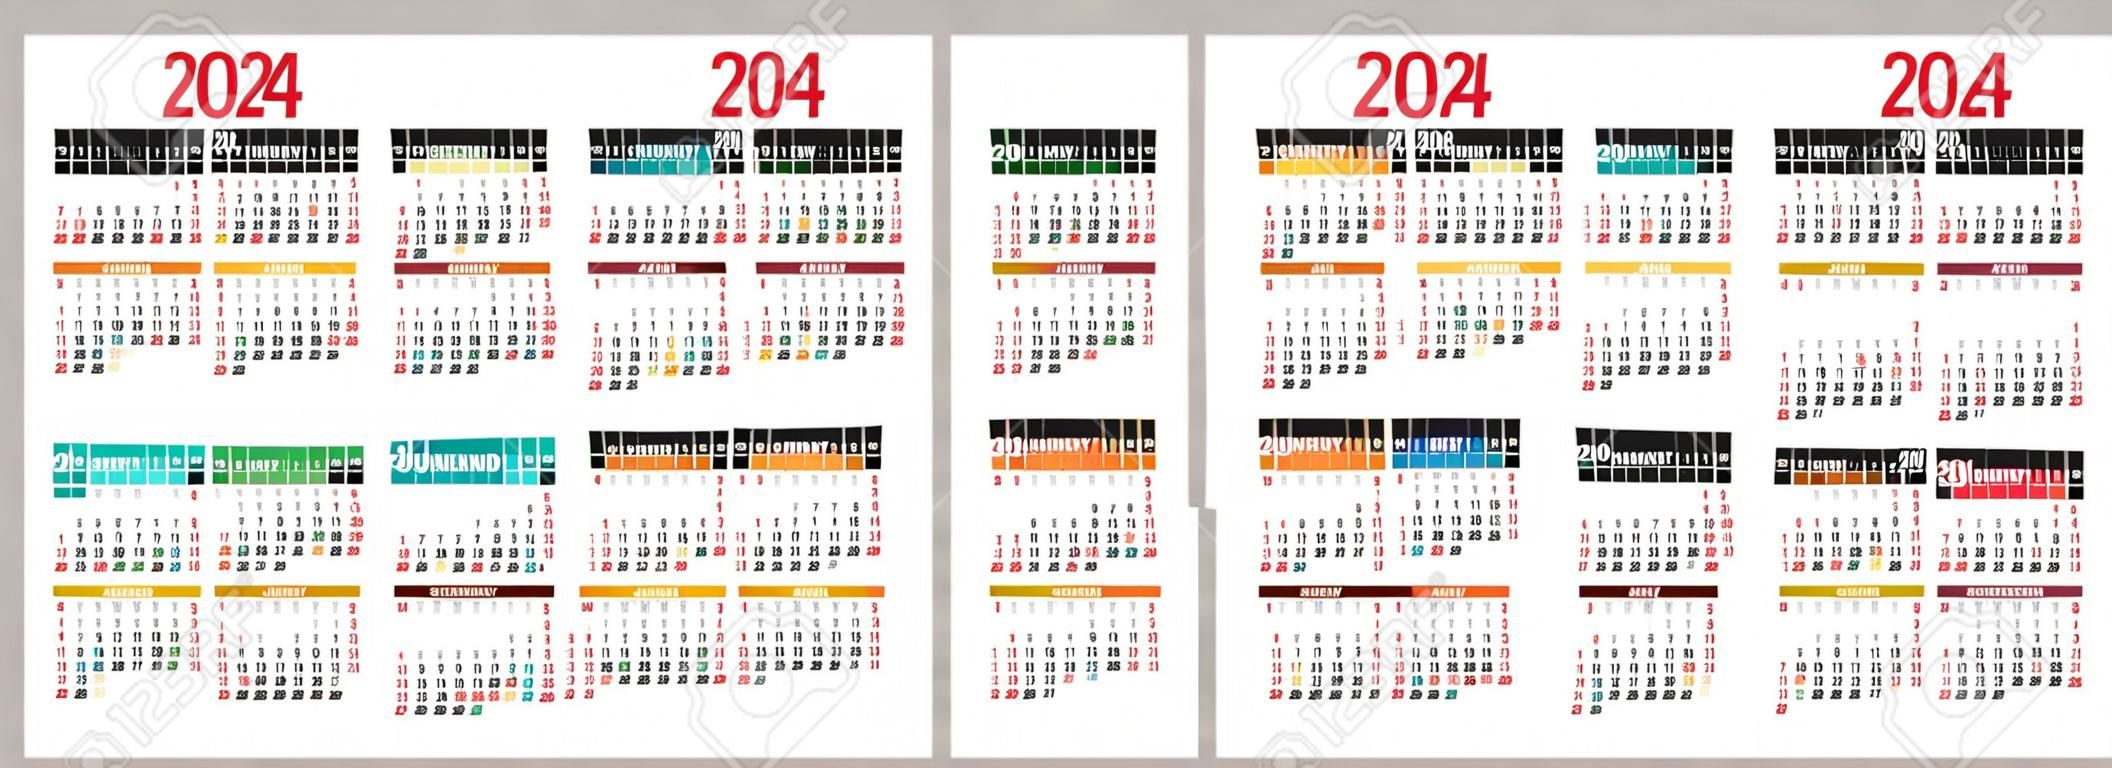 Calendario colorato 2023, 2024, 2025 e 2026. Calendario tascabile vettoriale a colori. la settimana inizia la domenica. gennaio, febbraio, marzo, aprile, maggio, giugno, luglio, agosto, settembre, ottobre, novembre, dicembre.